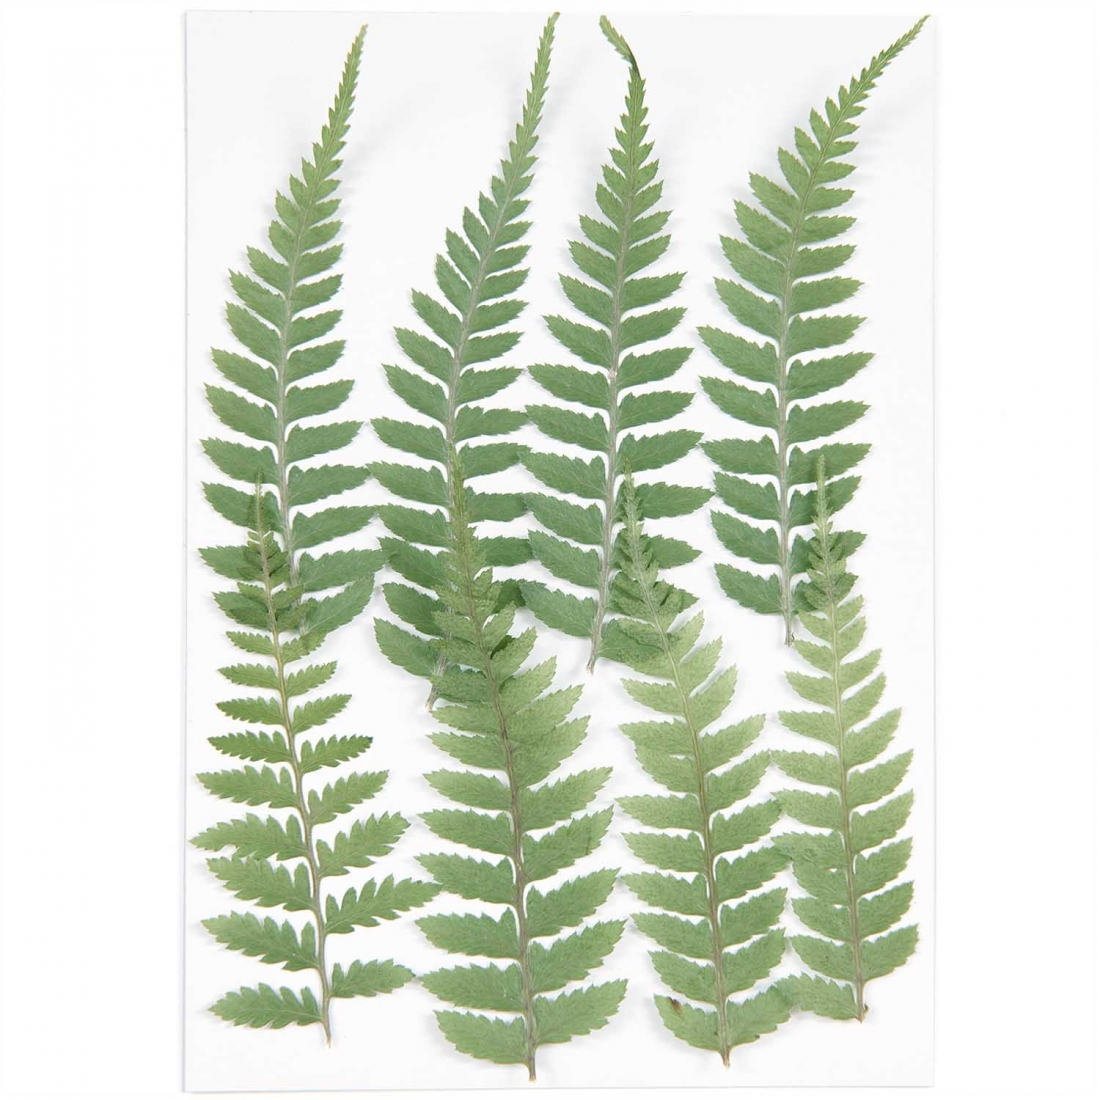 Small fern (8pcs) - (flores prensadas)